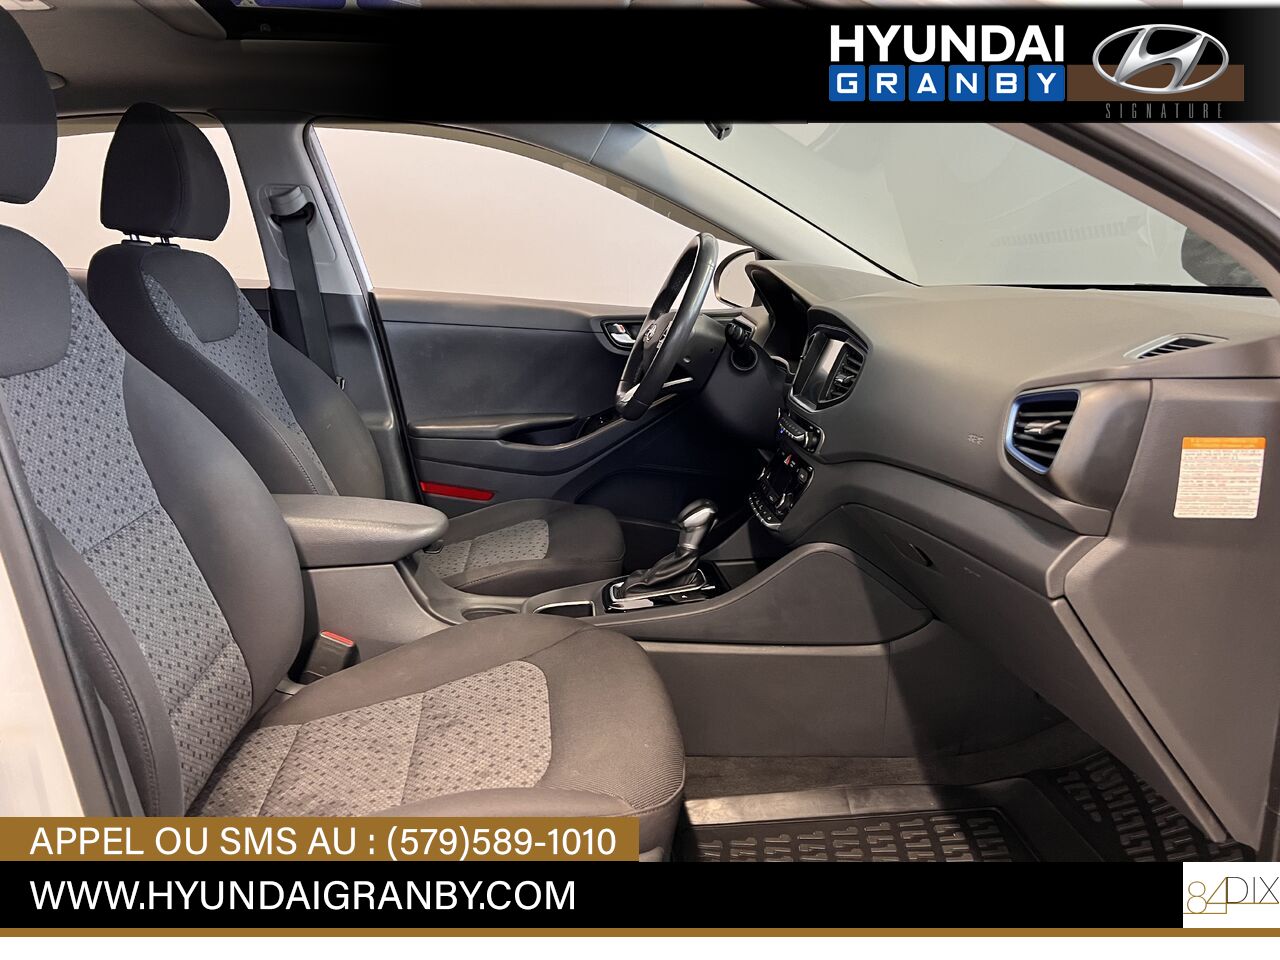 Hyundai Ioniq hybride 2017 Granby - photo #25